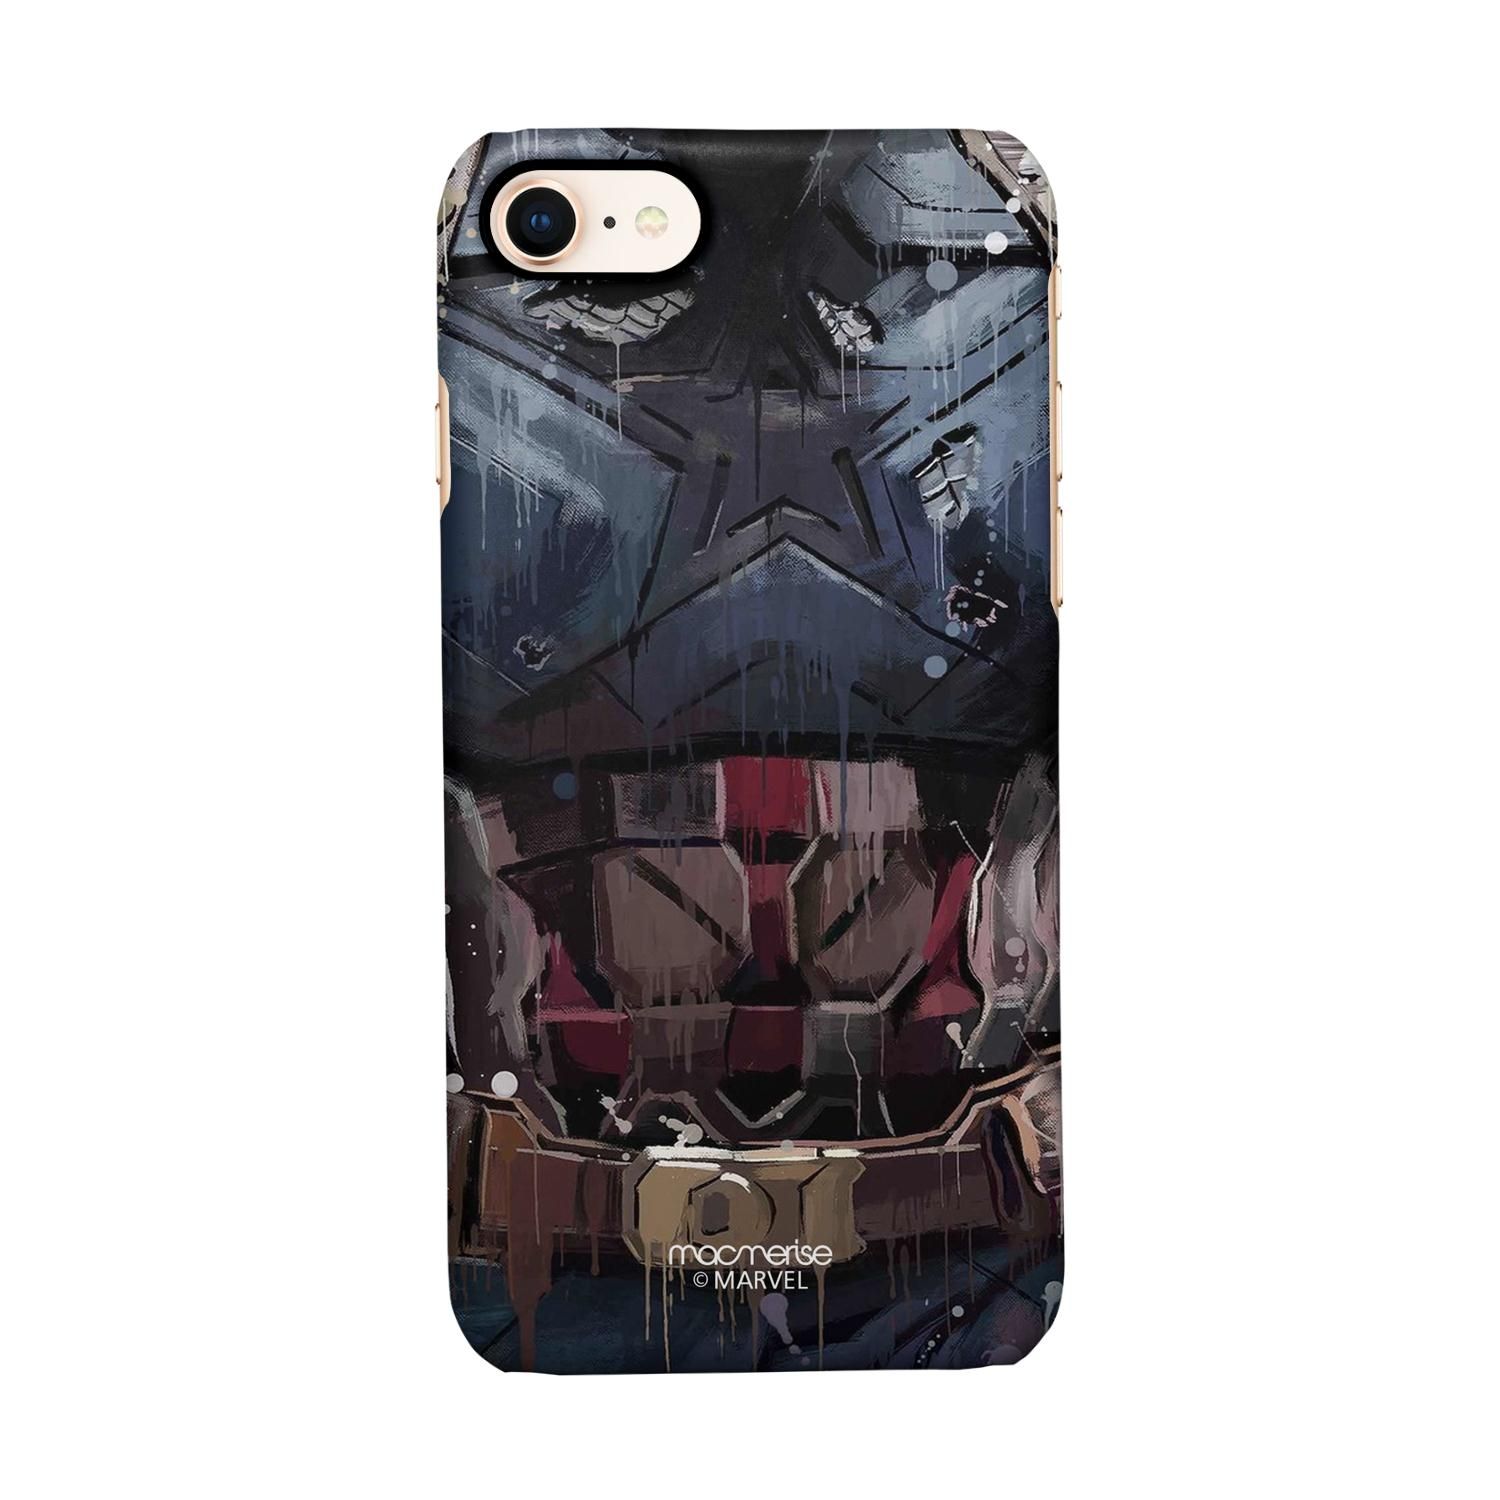 Buy Grunge Suit Steve - Sleek Phone Case for iPhone 8 Online